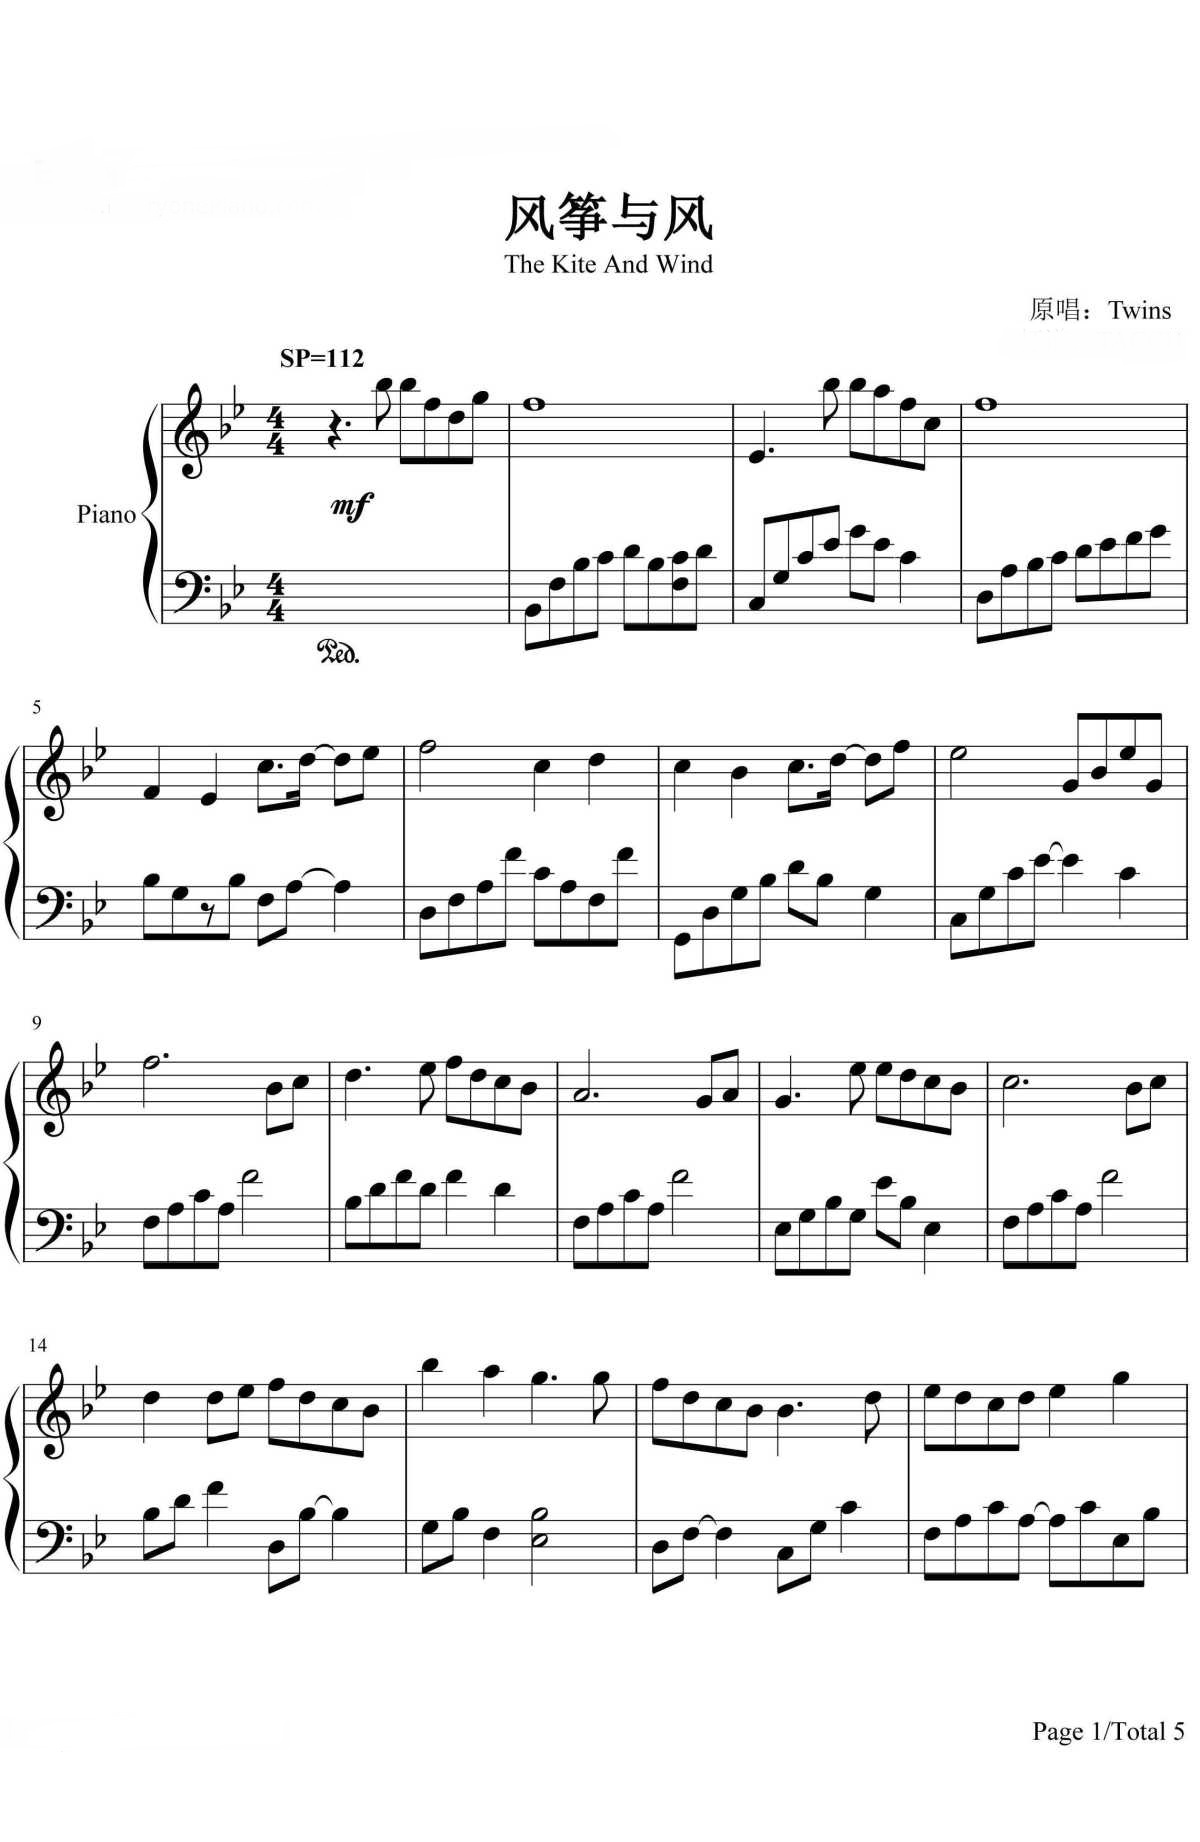 《风筝与风》的钢琴谱钢琴曲谱 - Twins